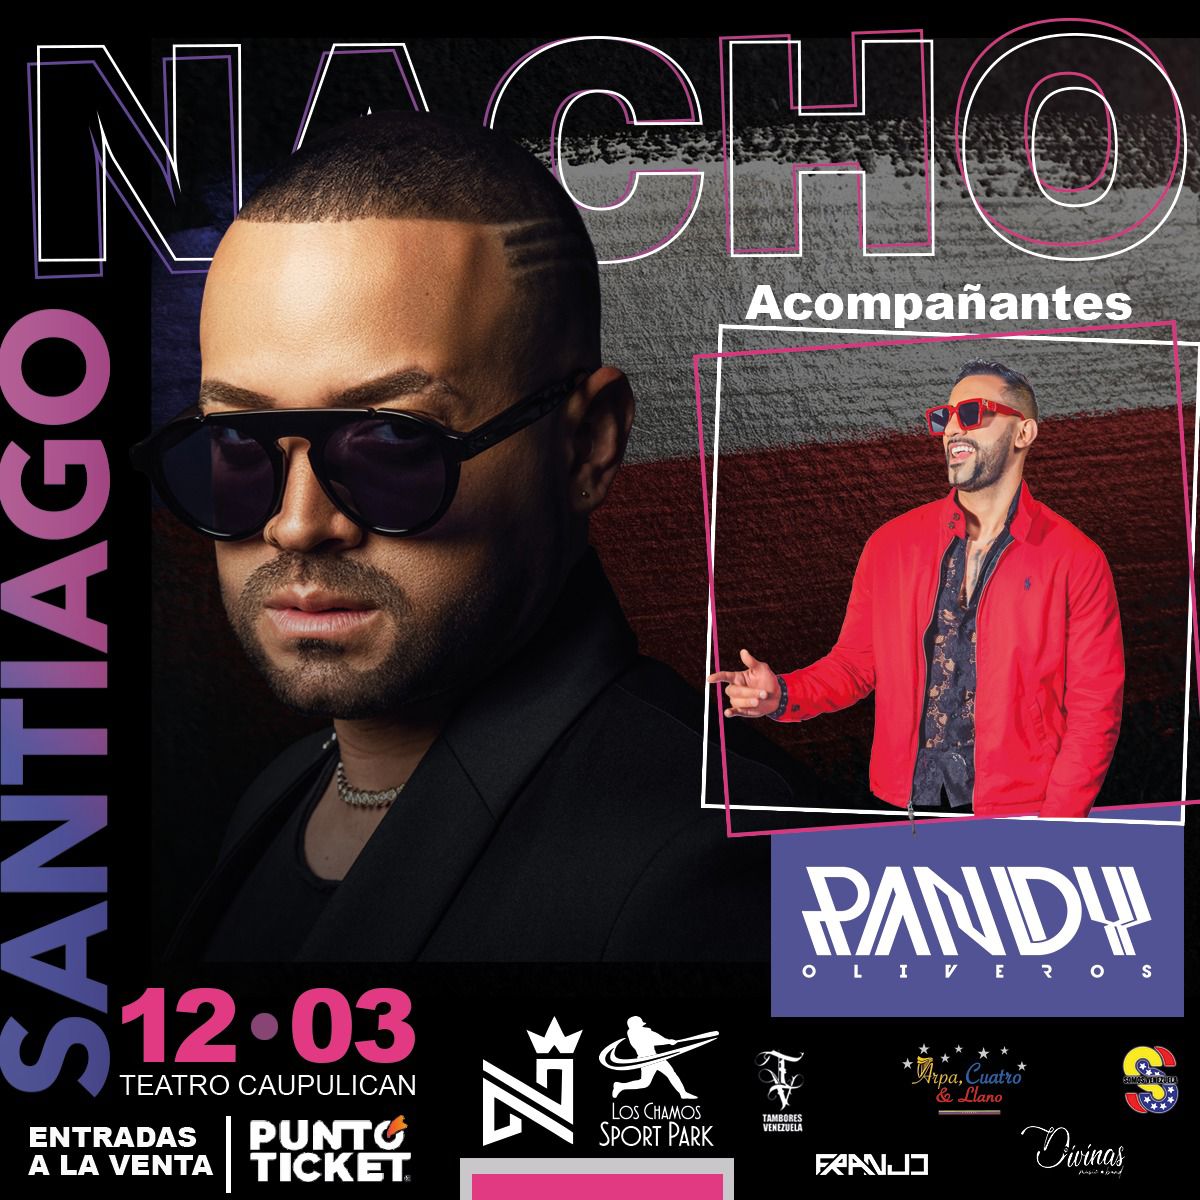 El monaguense Randy Oliveros compartirá escenario en Chile con Nacho